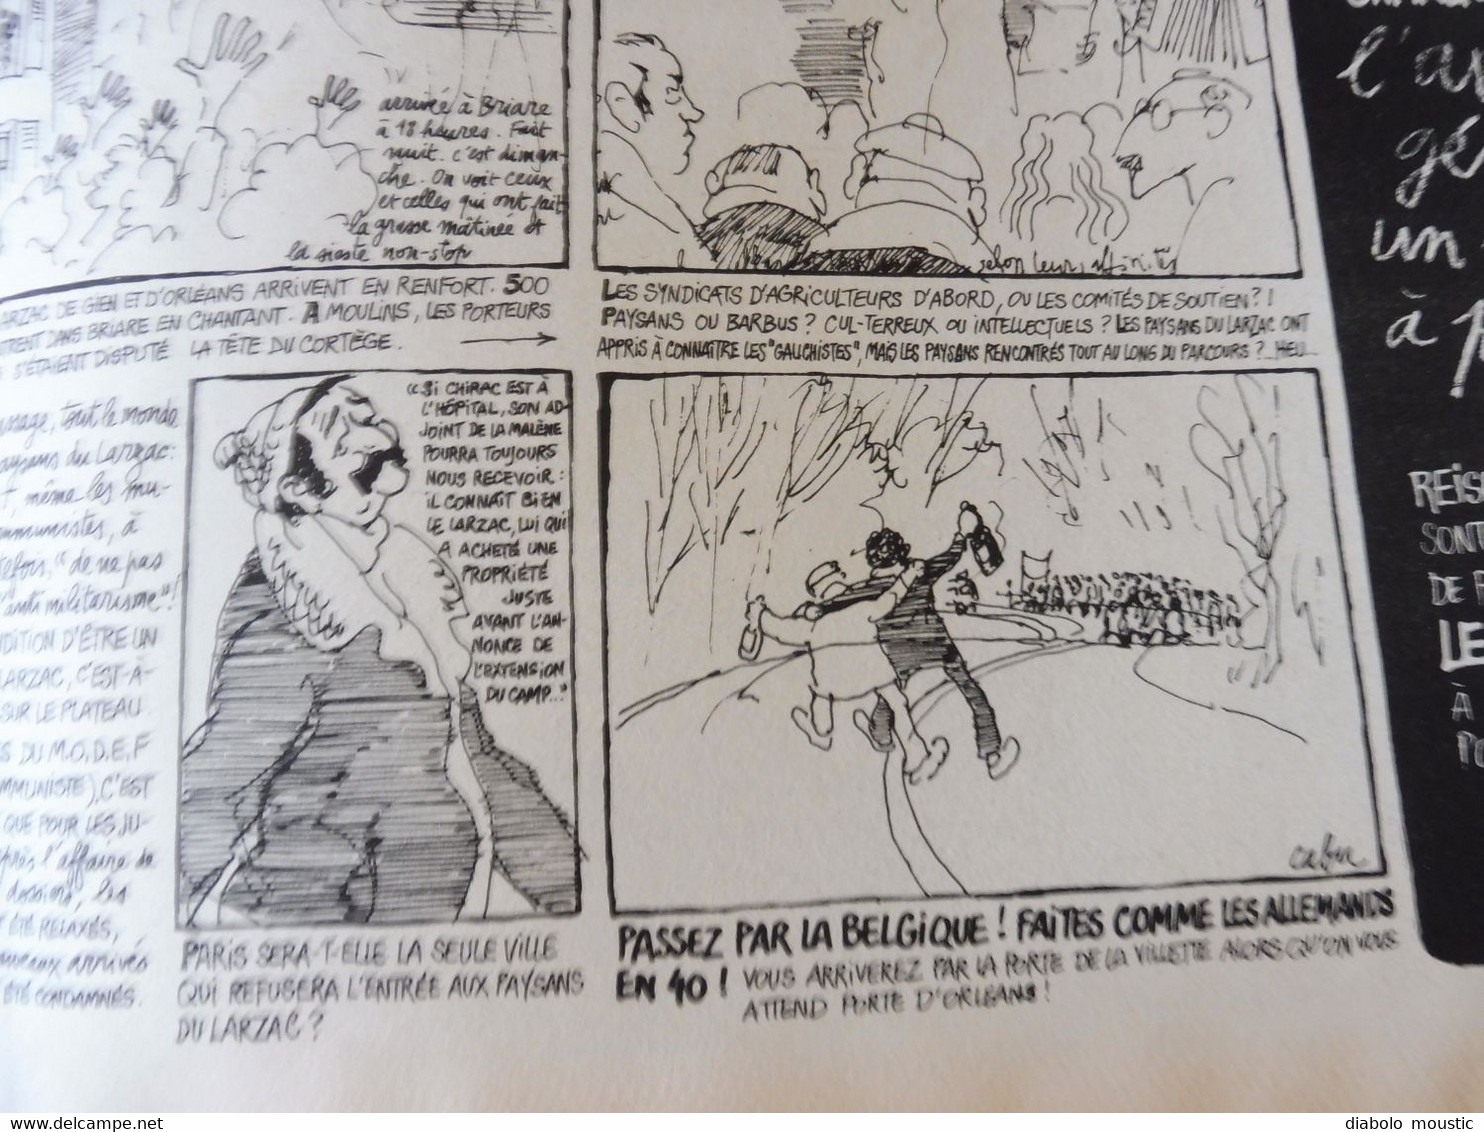 1978 LES PAYSANS DU LARZAC  ..........Etc  (Charlie Hebdo)